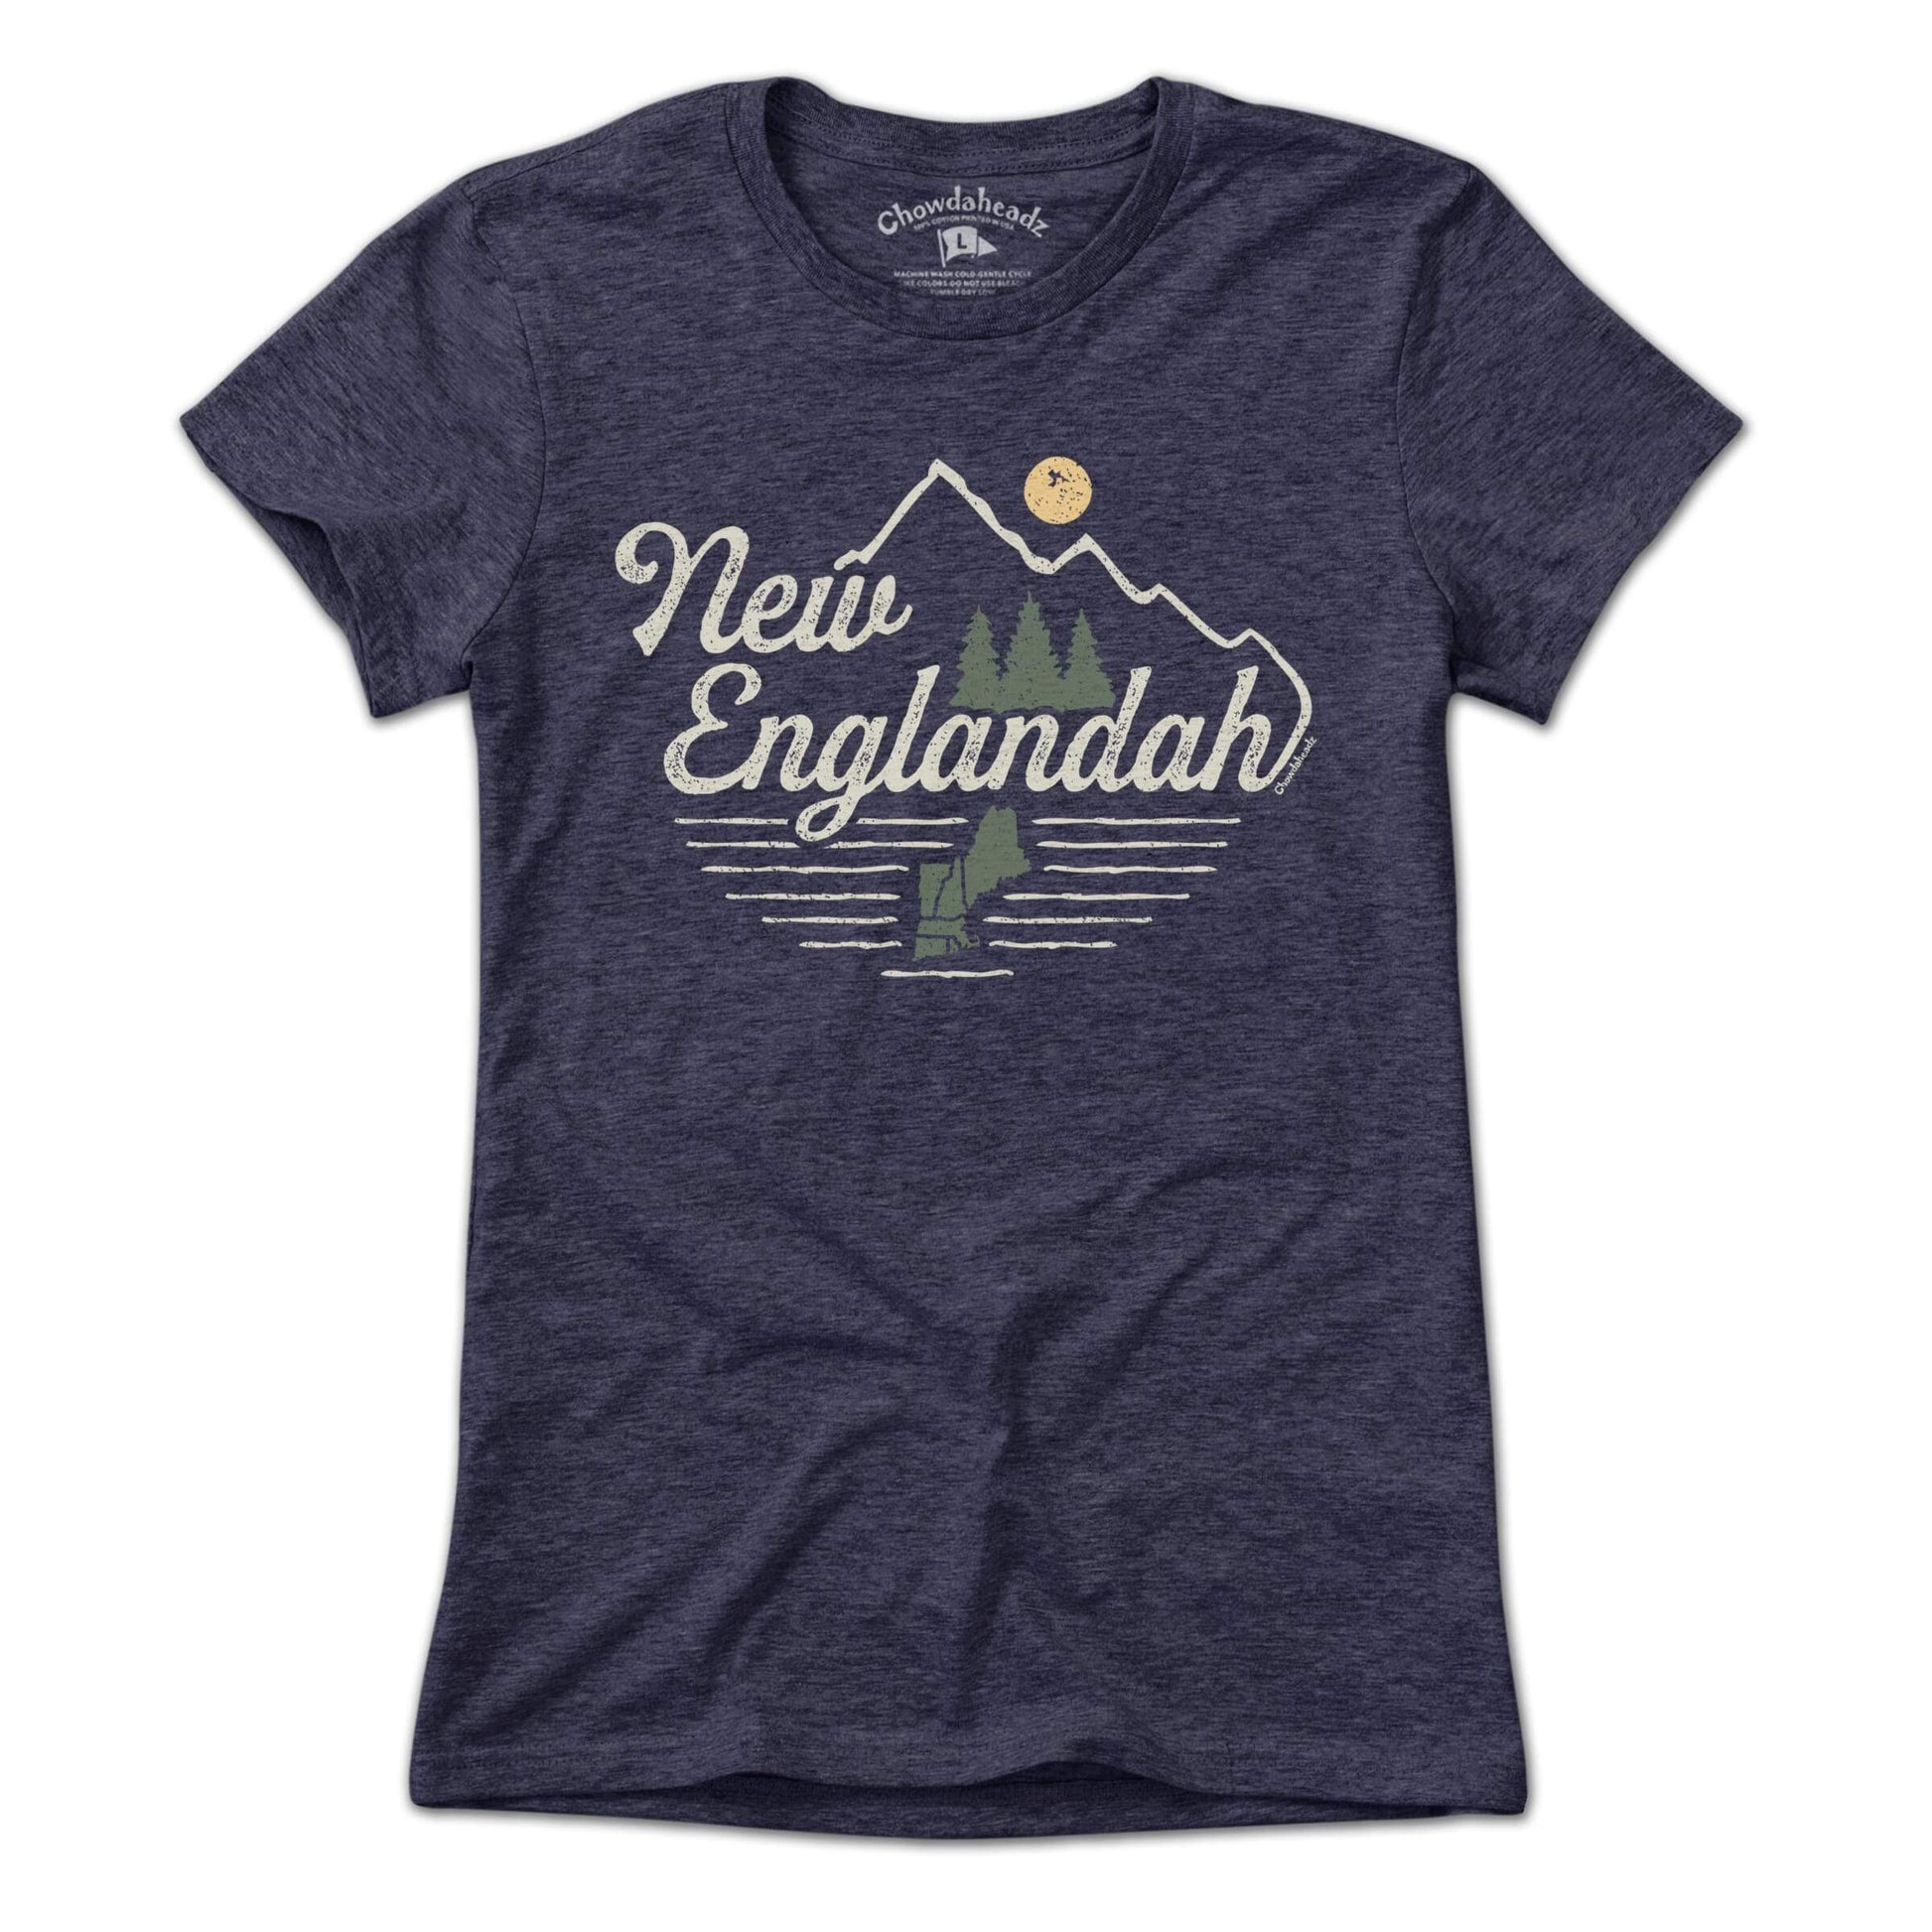 New Englandah T-Shirt - Chowdaheadz